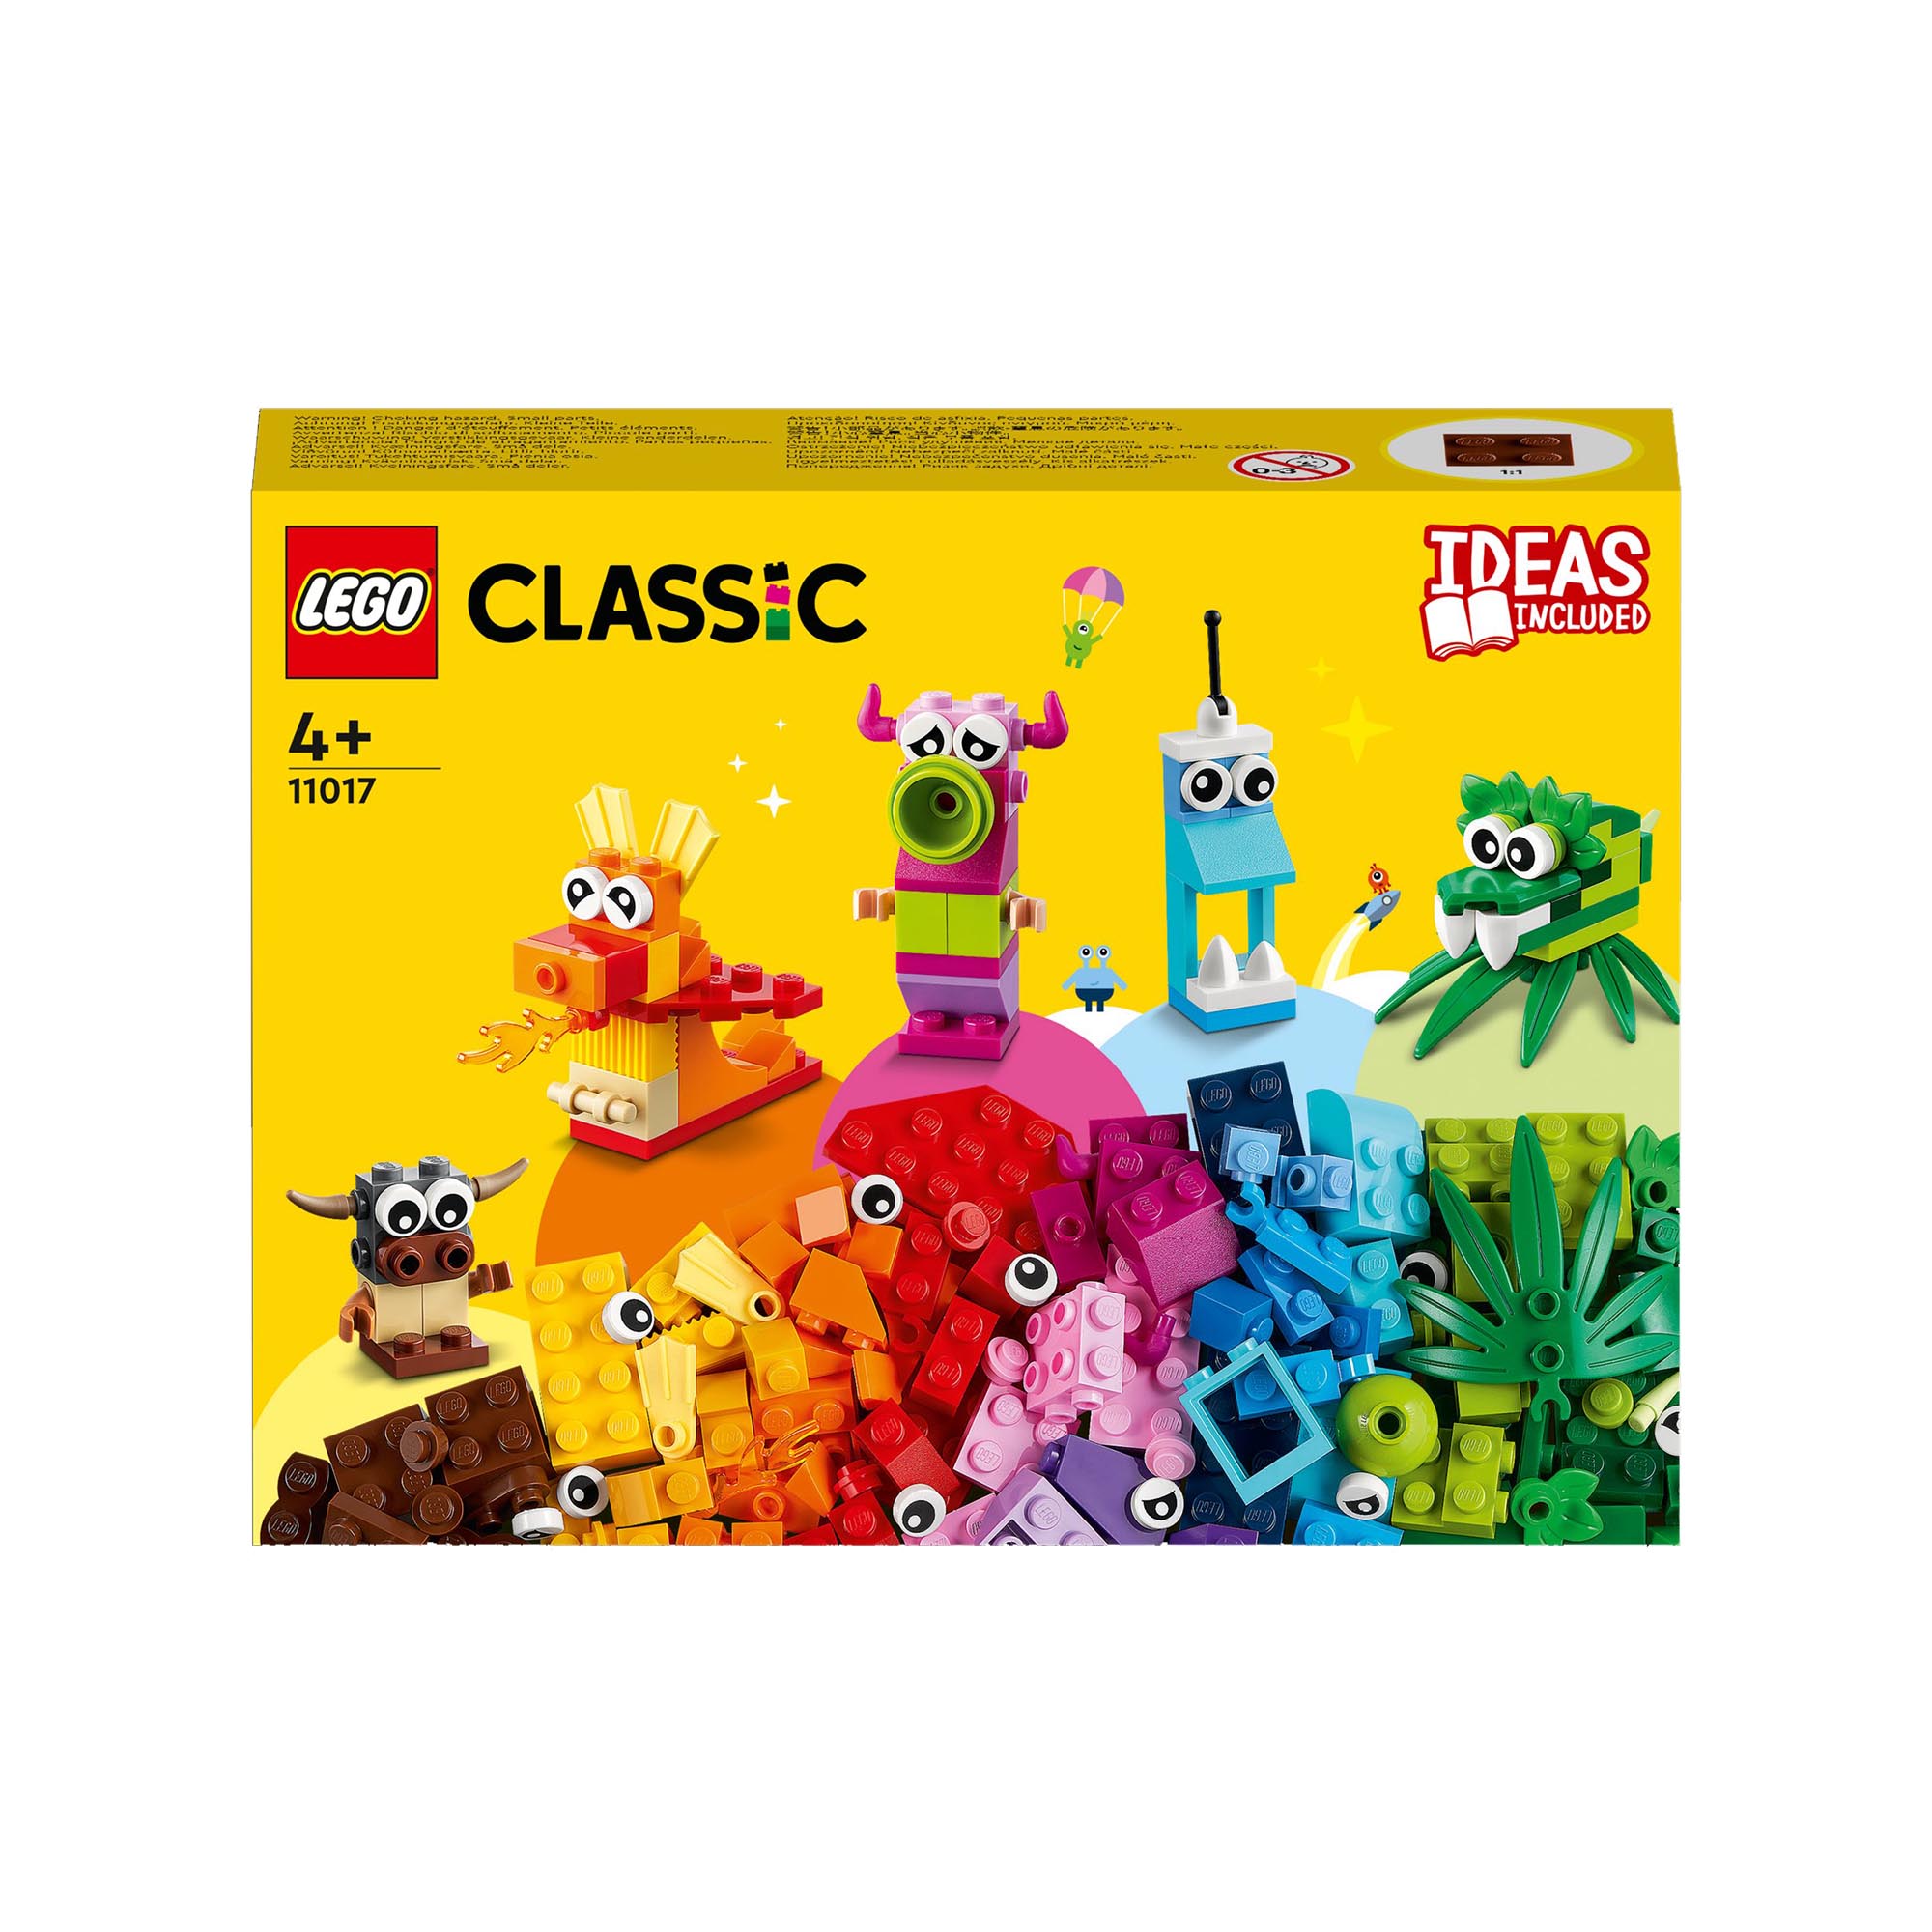 LEGO Classic Mostri Creativi, Giochi Educativi per Bambini dai 4 Anni in su, Gio 11017, , large